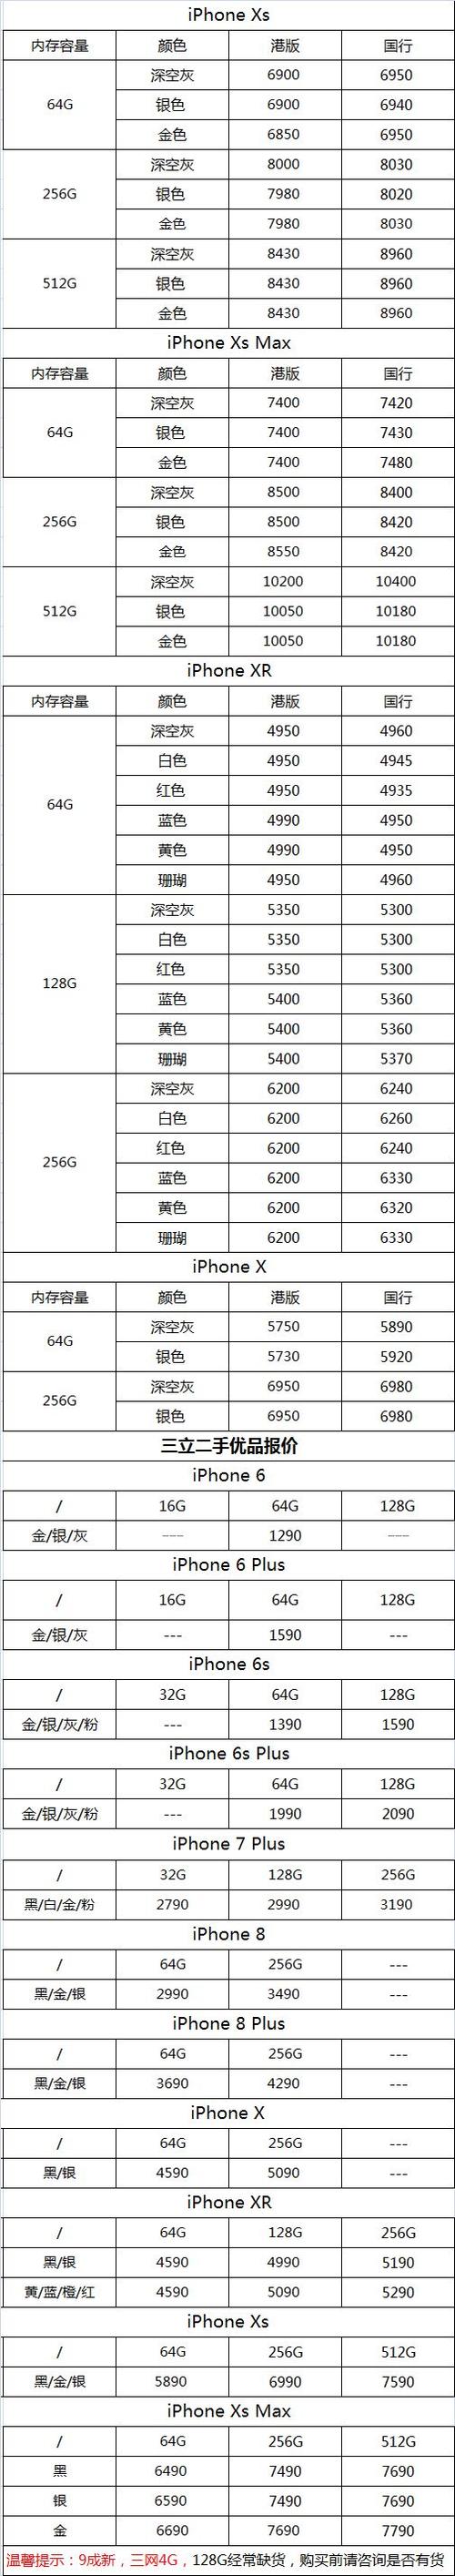 如果您购买的手机远远低于这个价格,那您就要小心了,苹果手机行情价都